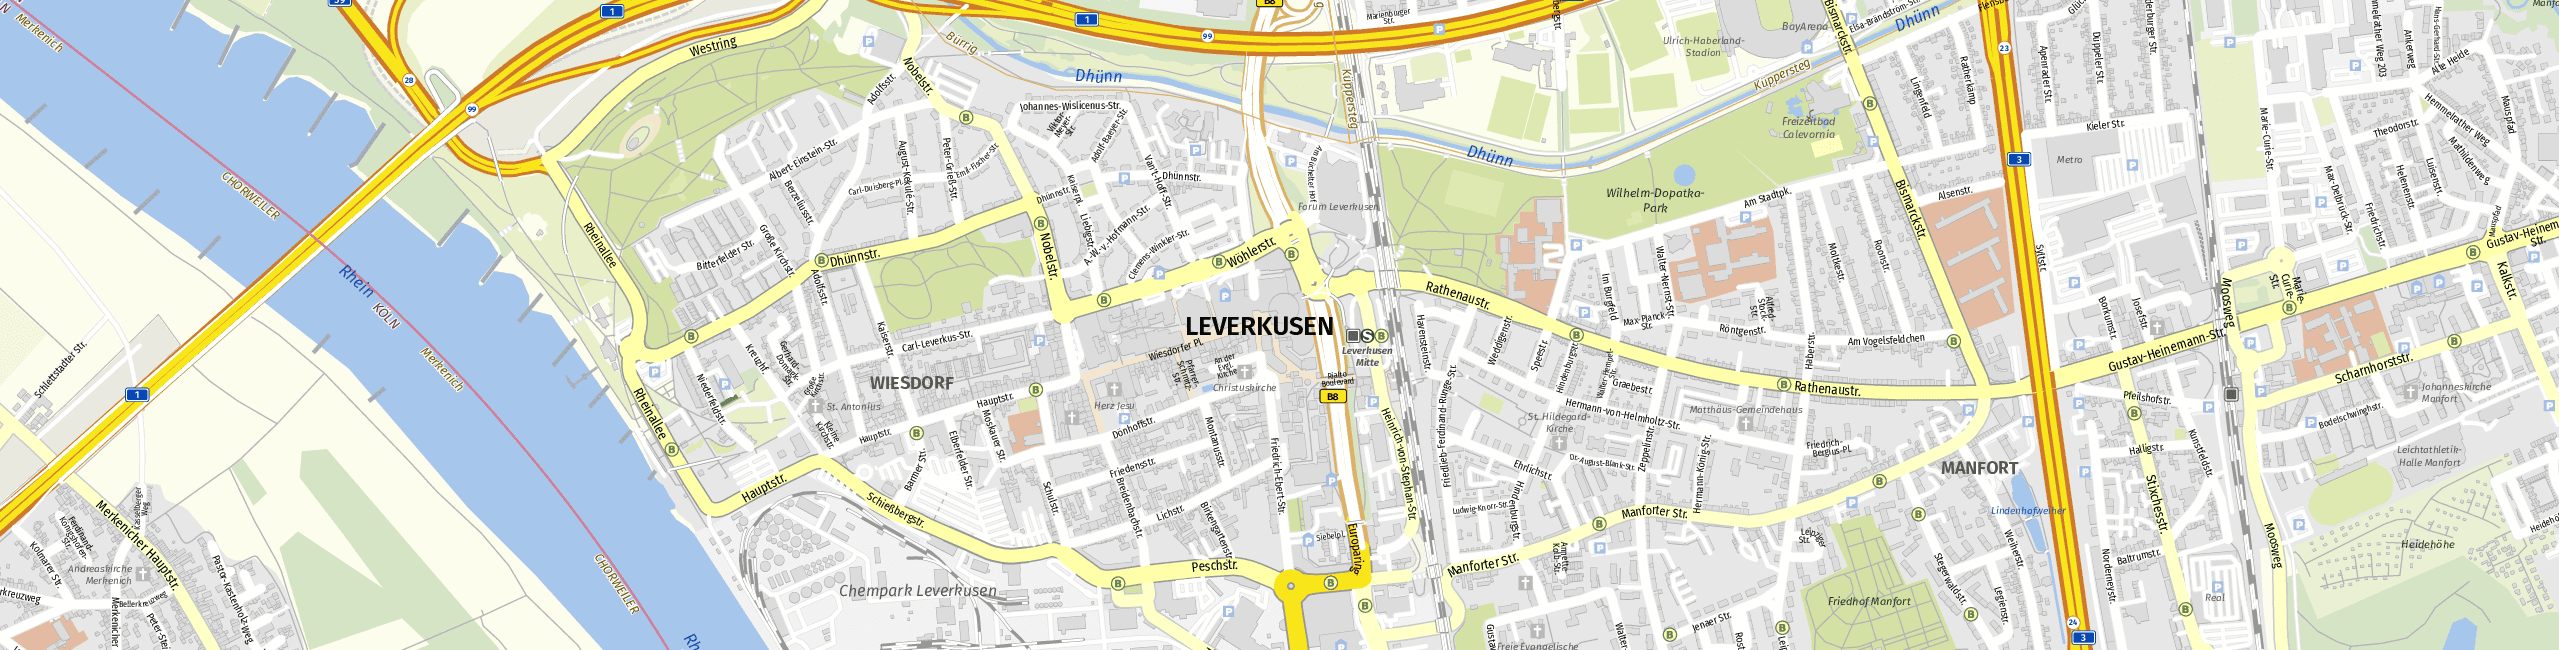 Stadtplan Leverkusen zum Downloaden.